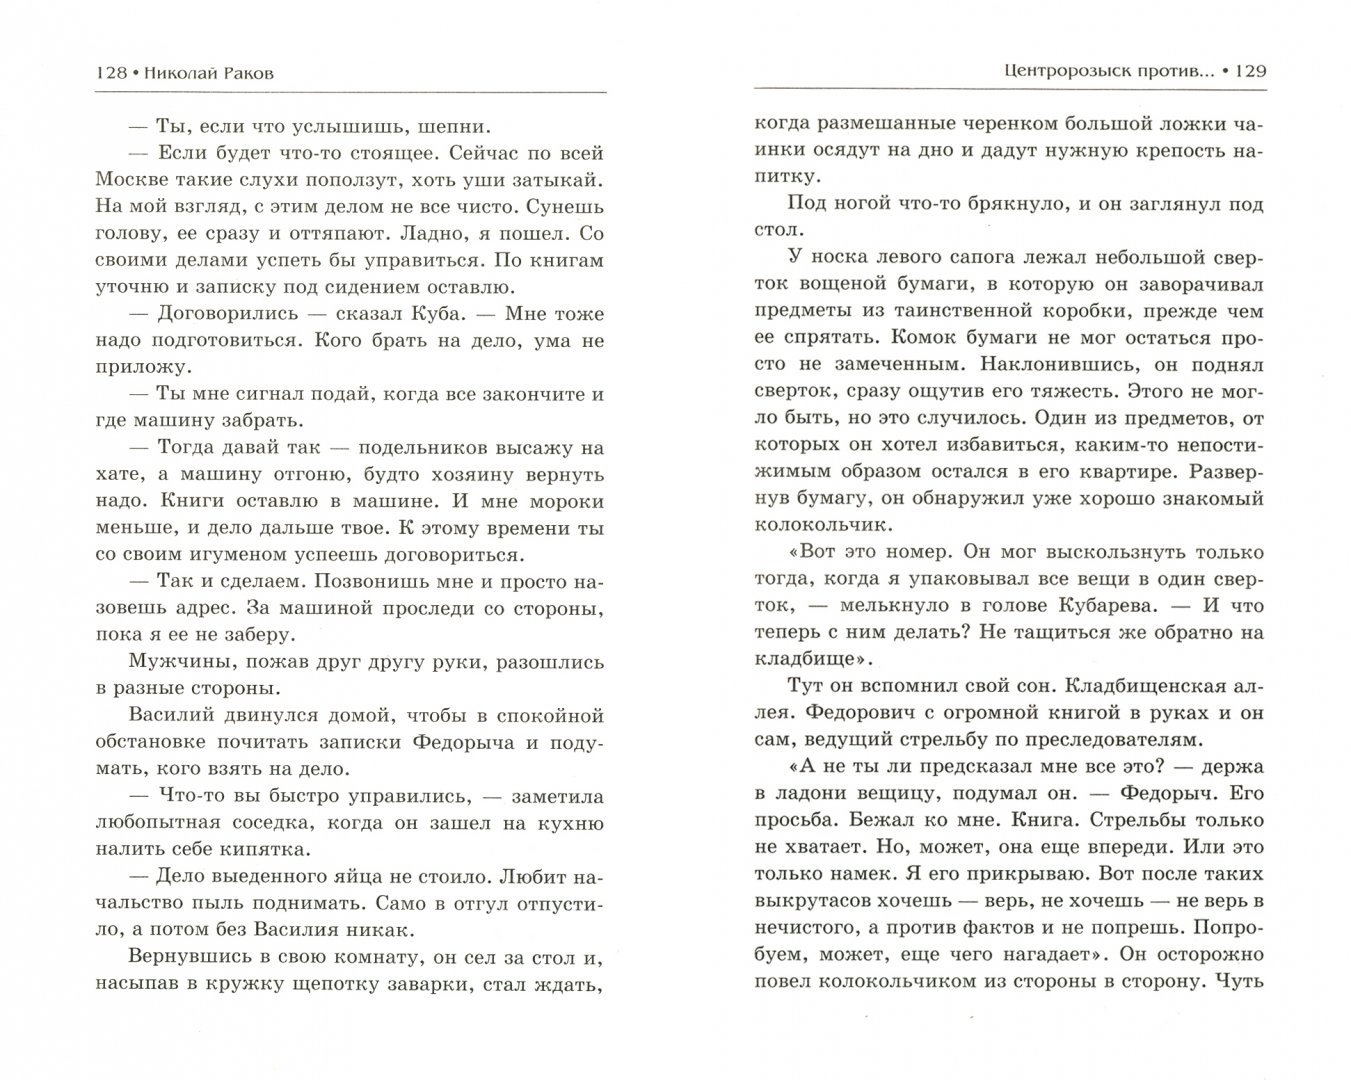 Иллюстрация 1 из 6 для Центророзыск против - Николай Раков | Лабиринт - книги. Источник: Лабиринт